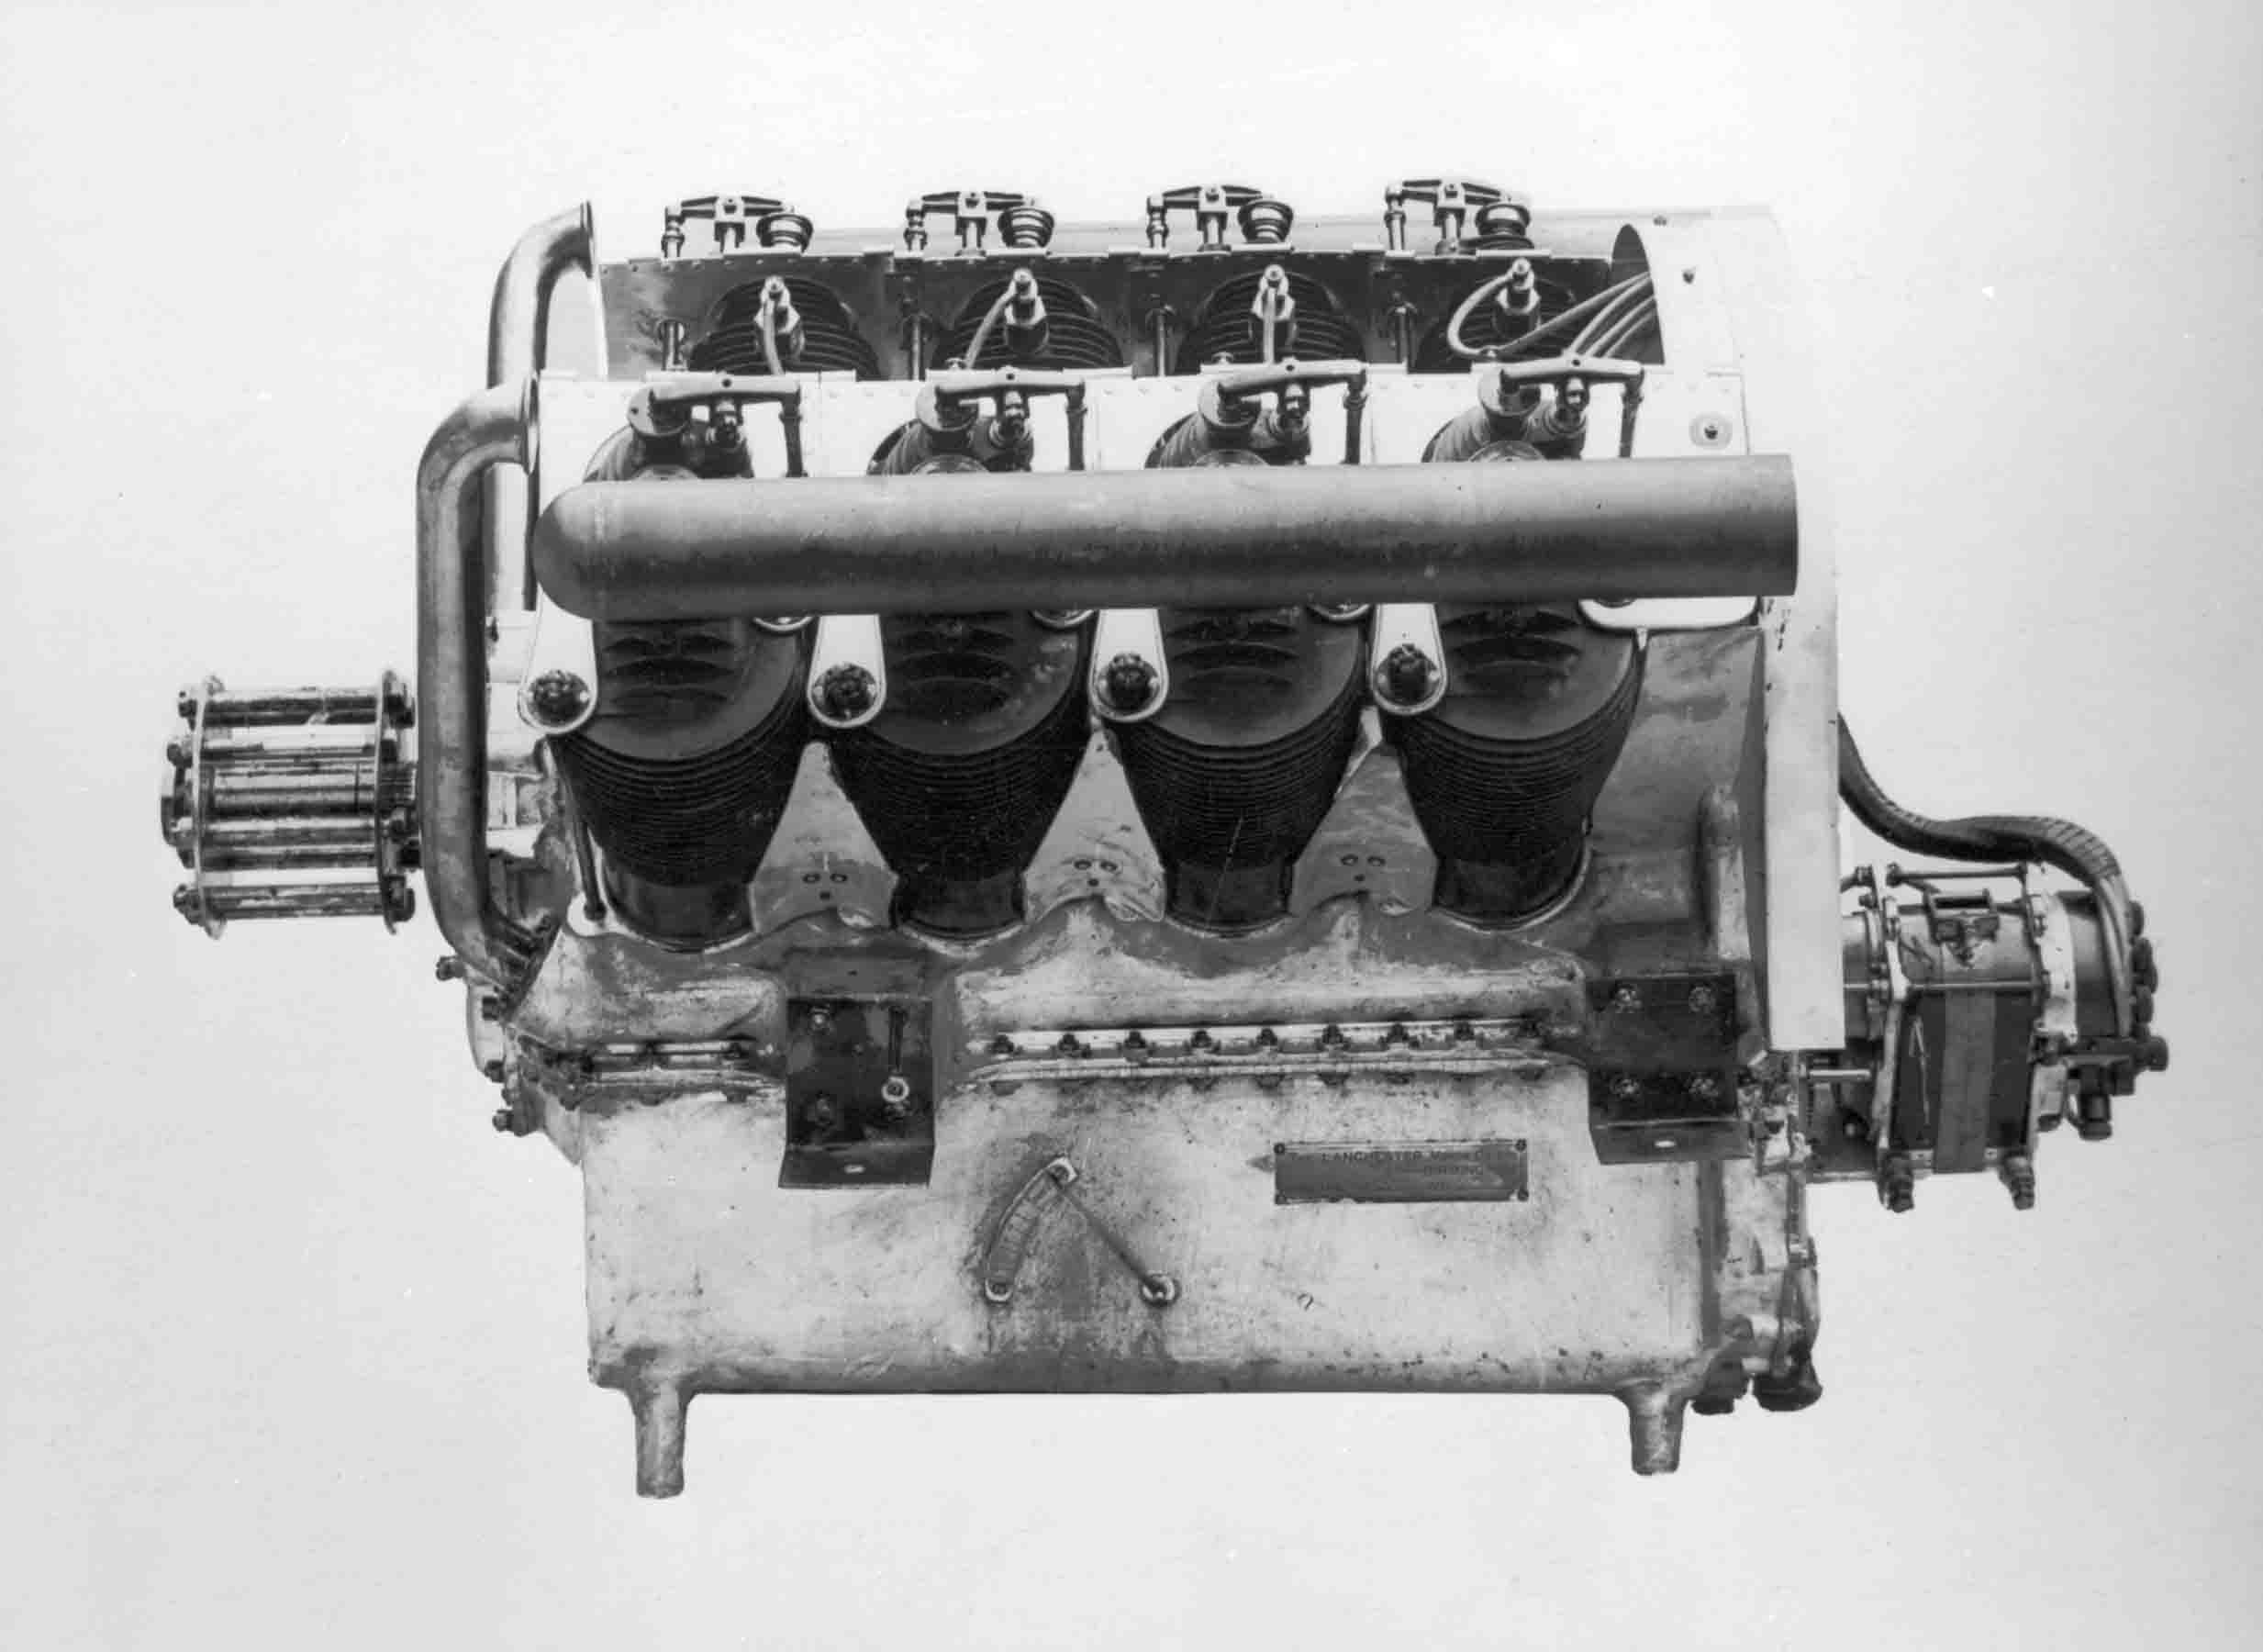 RAF 1a engine